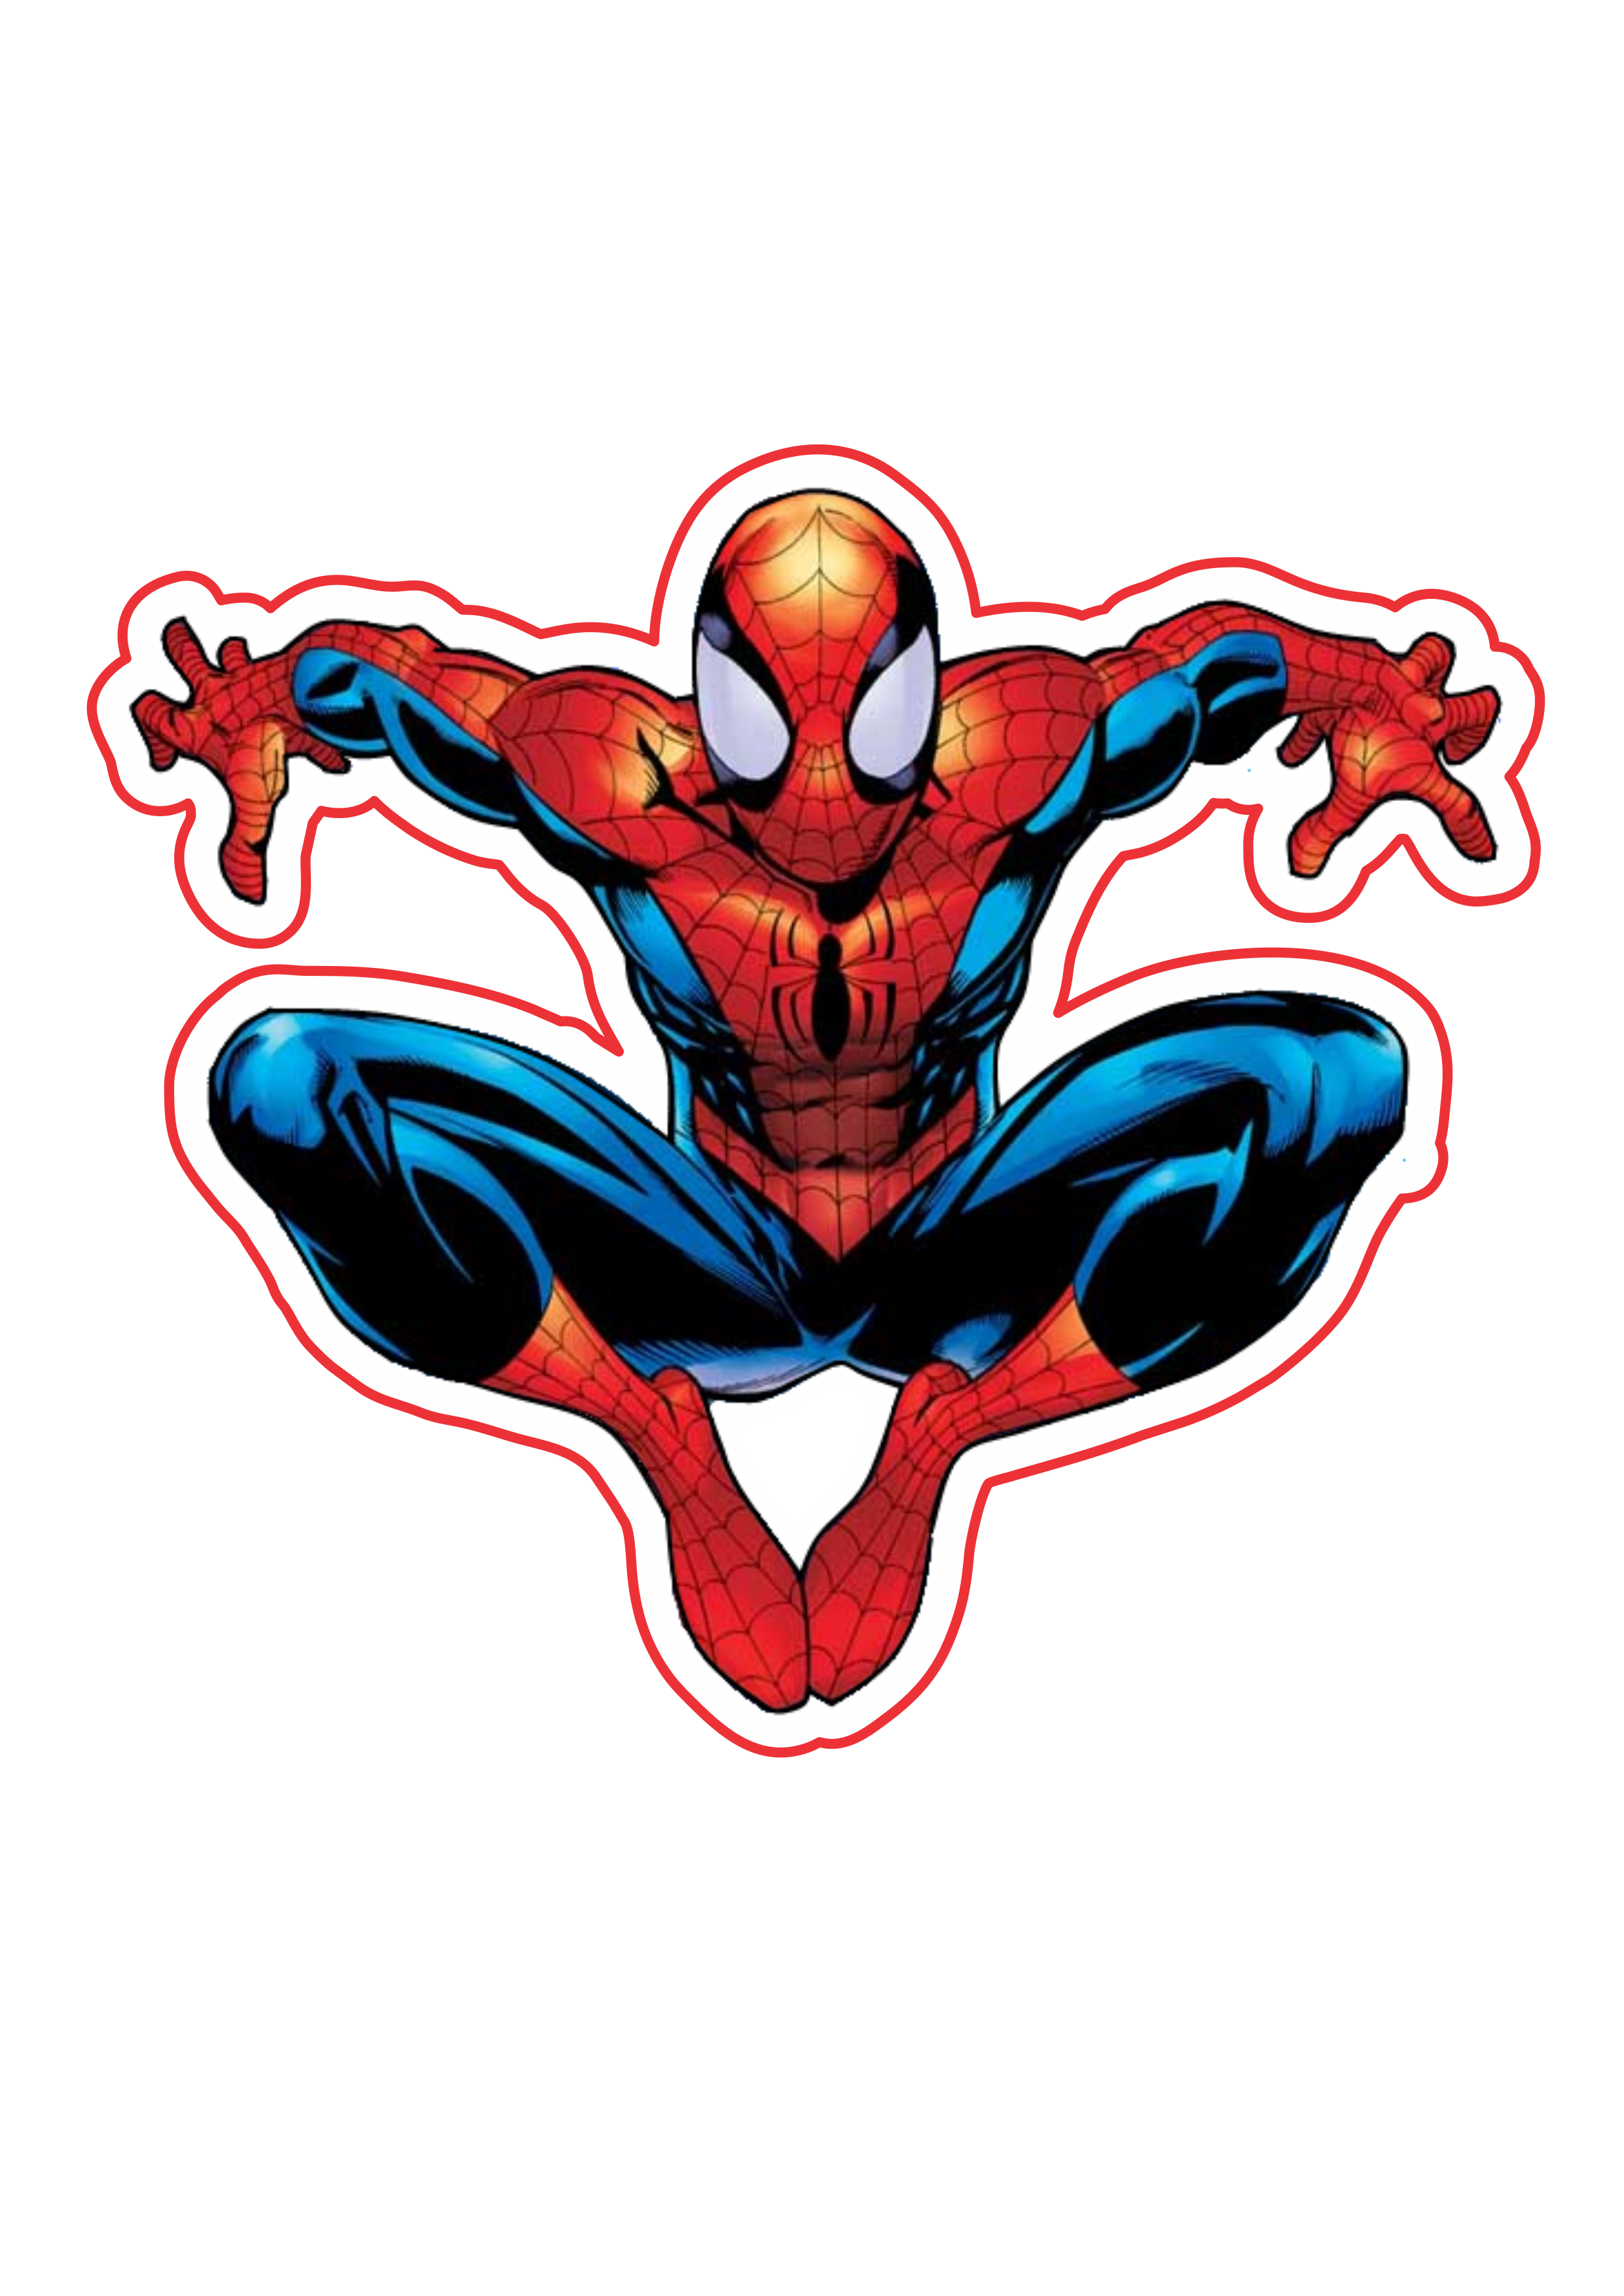 Ultimate Spider-man imagem fundo transparente marvel super heróis arte conceitual png